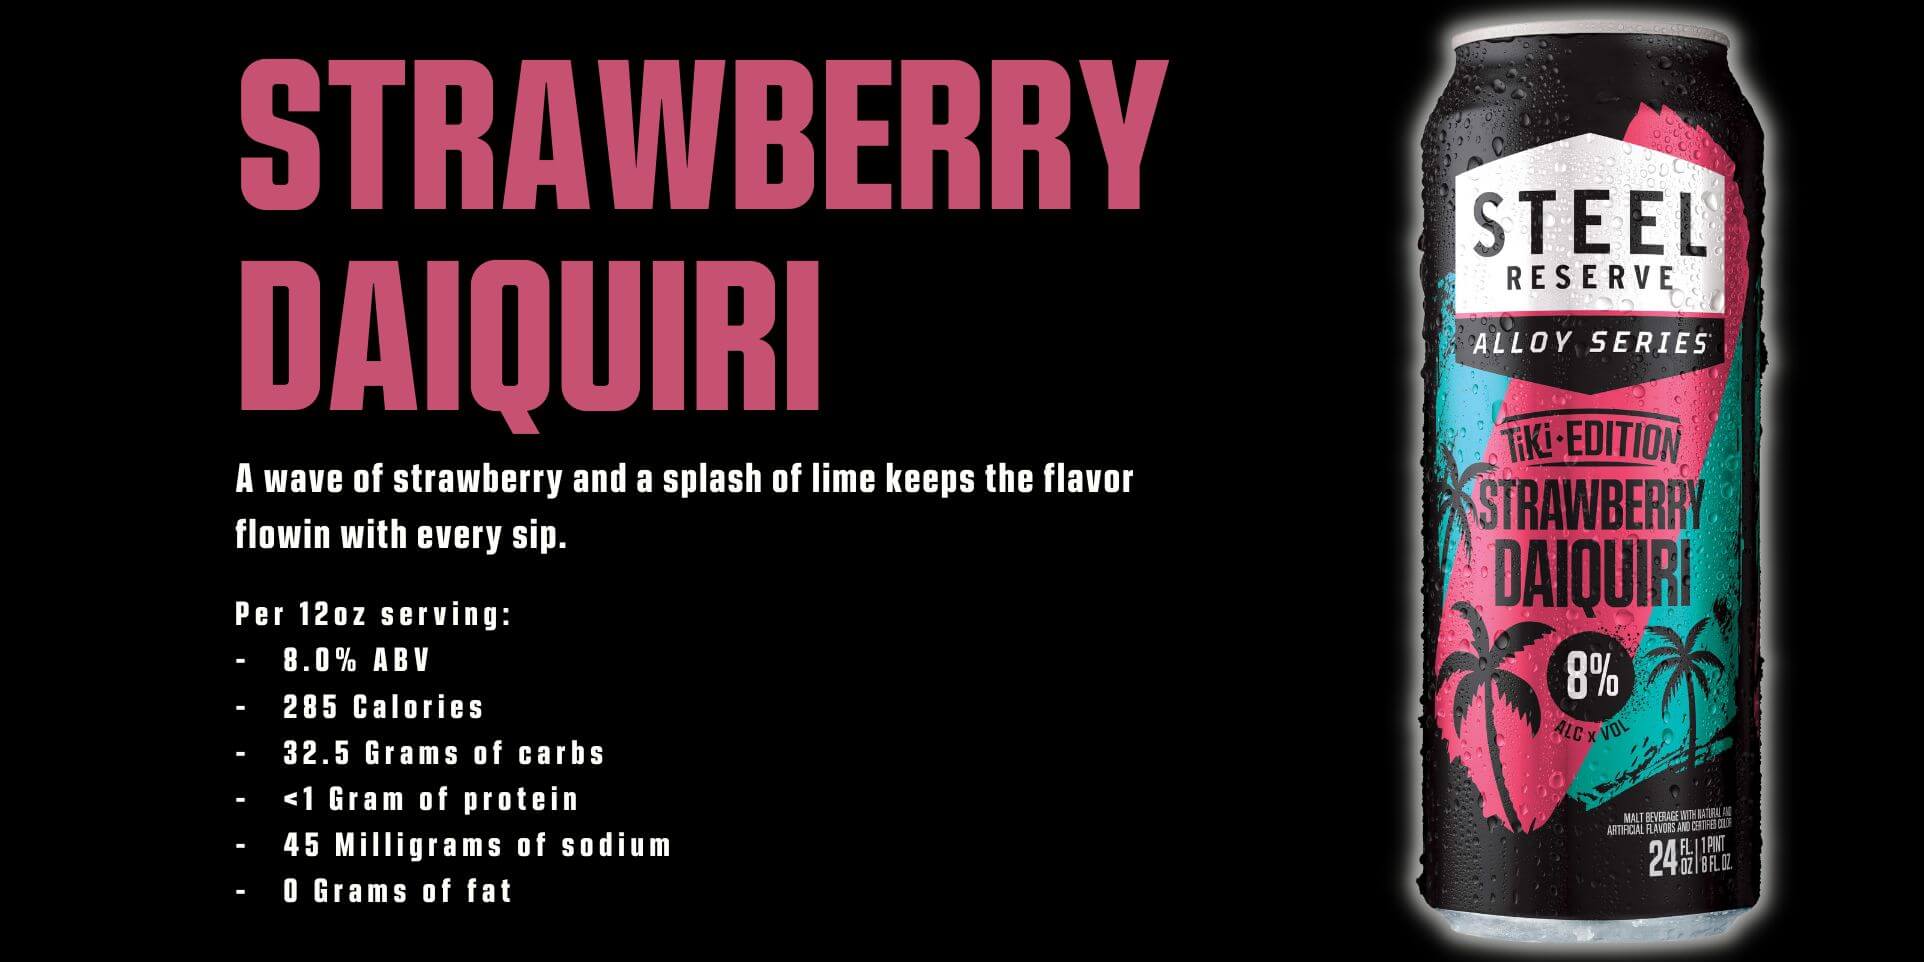 Strawberry Daiquiri description